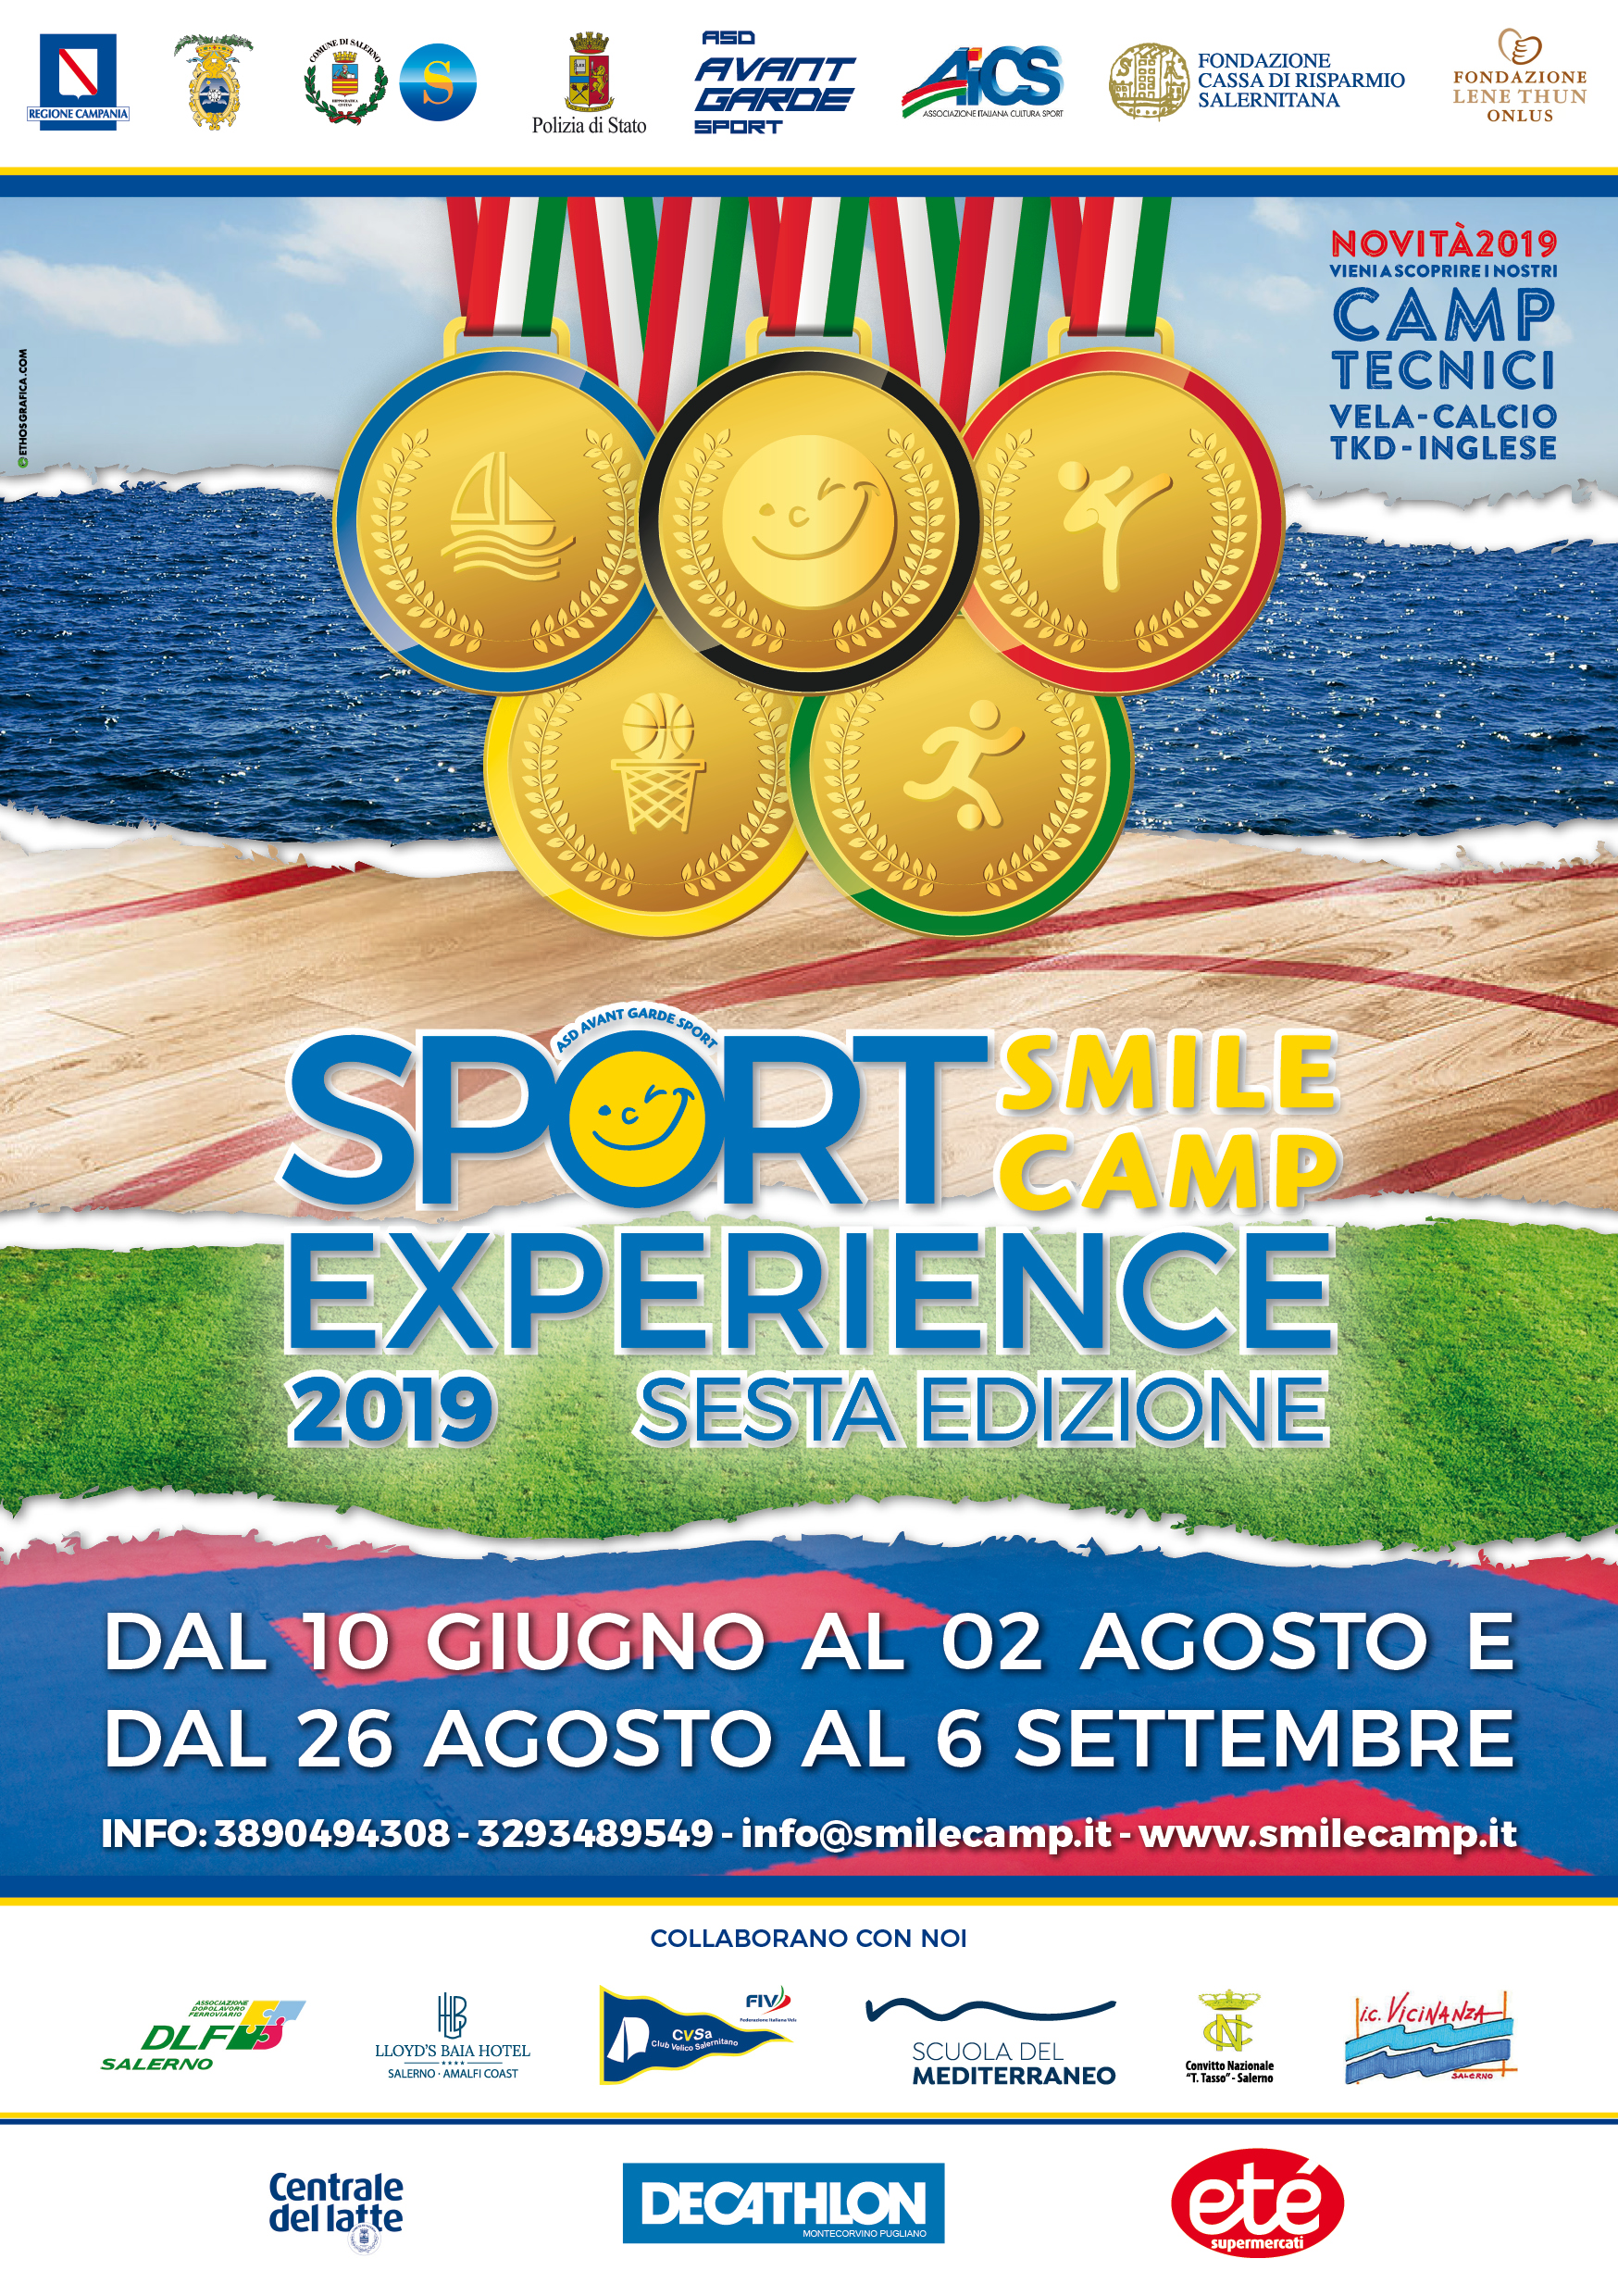 Smile Camp VELA e multisport